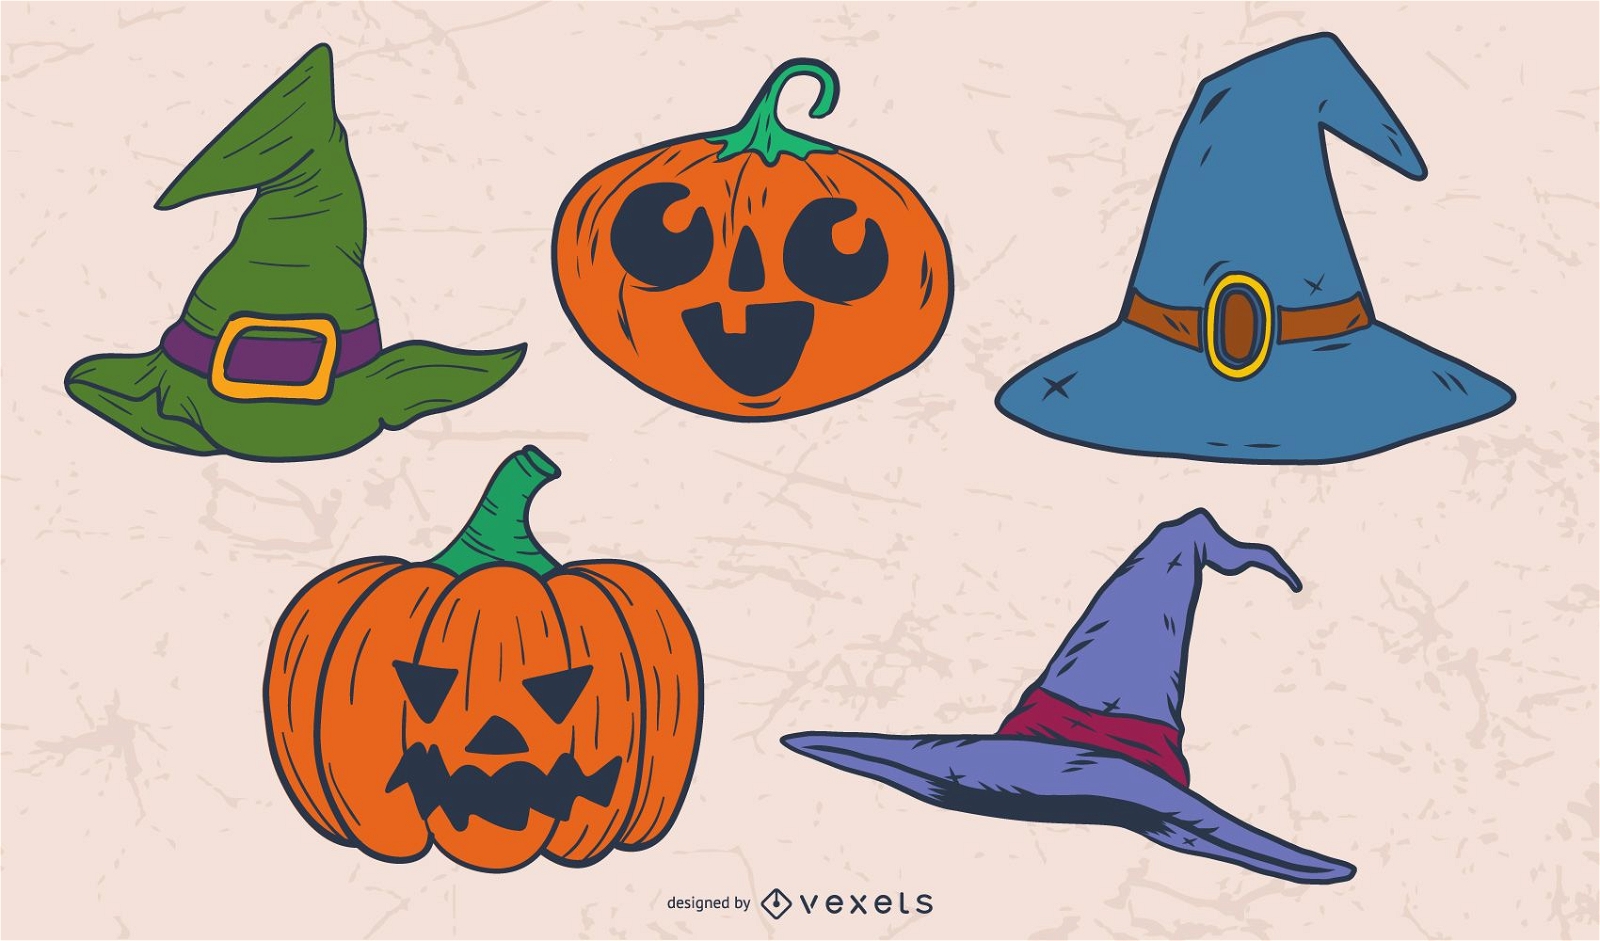 Descarga Vector De Sombreros De Bruja Y Calabazas Para Halloween